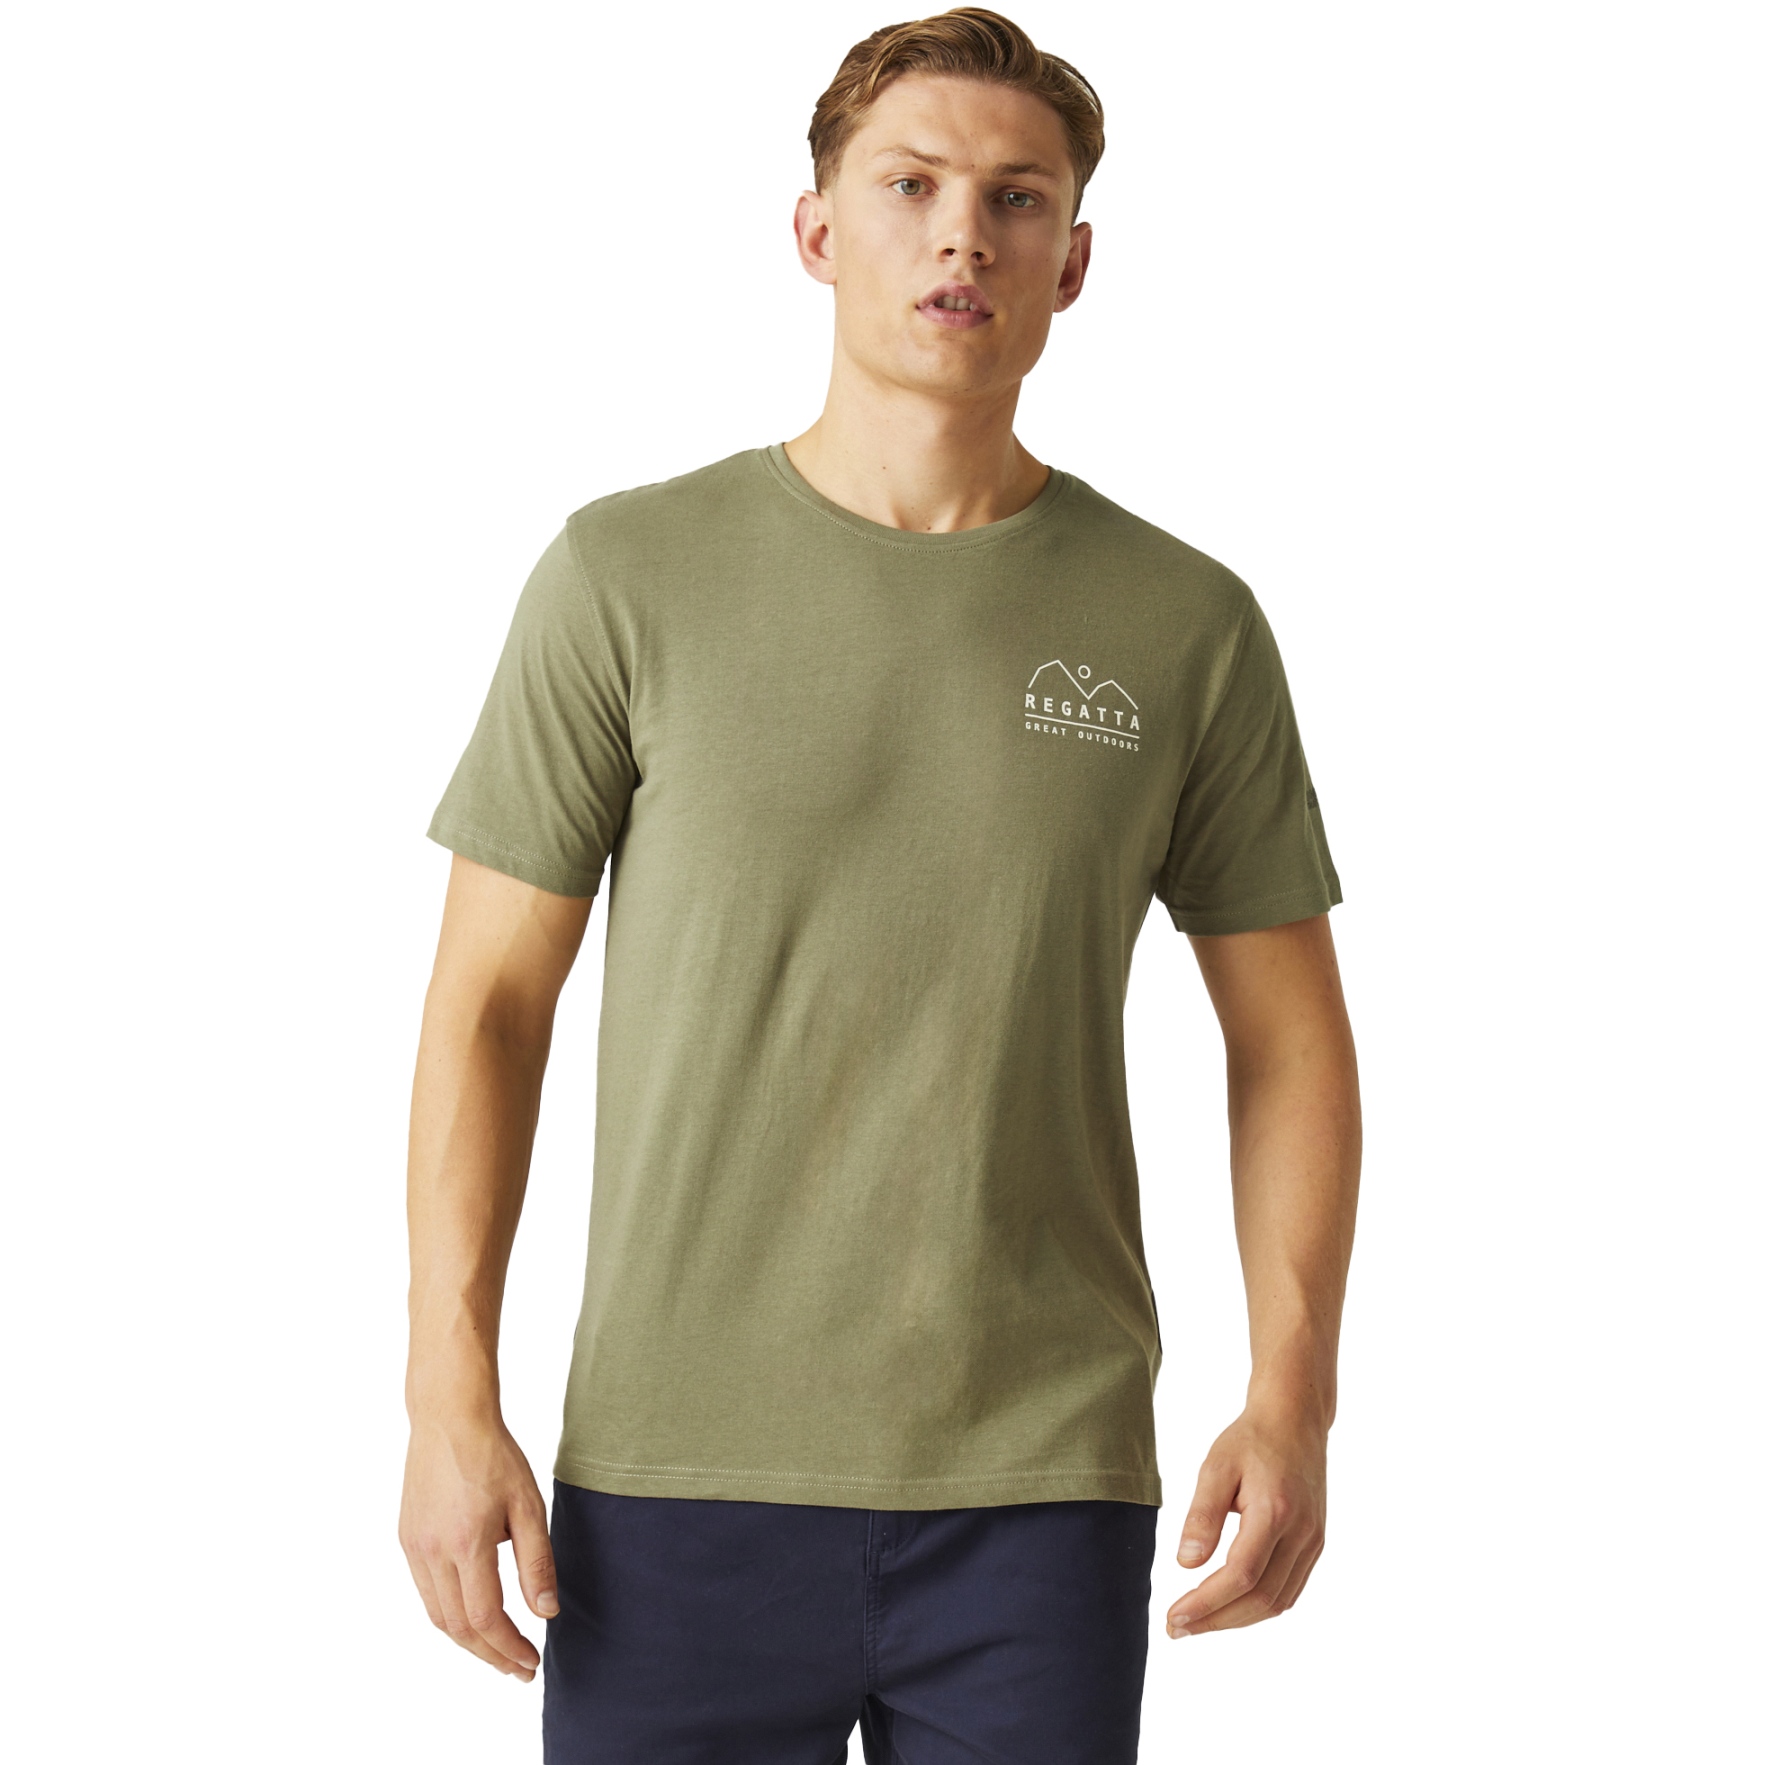 Picture of Regatta Cline VIII T-Shirt Men - Fauna 9B9